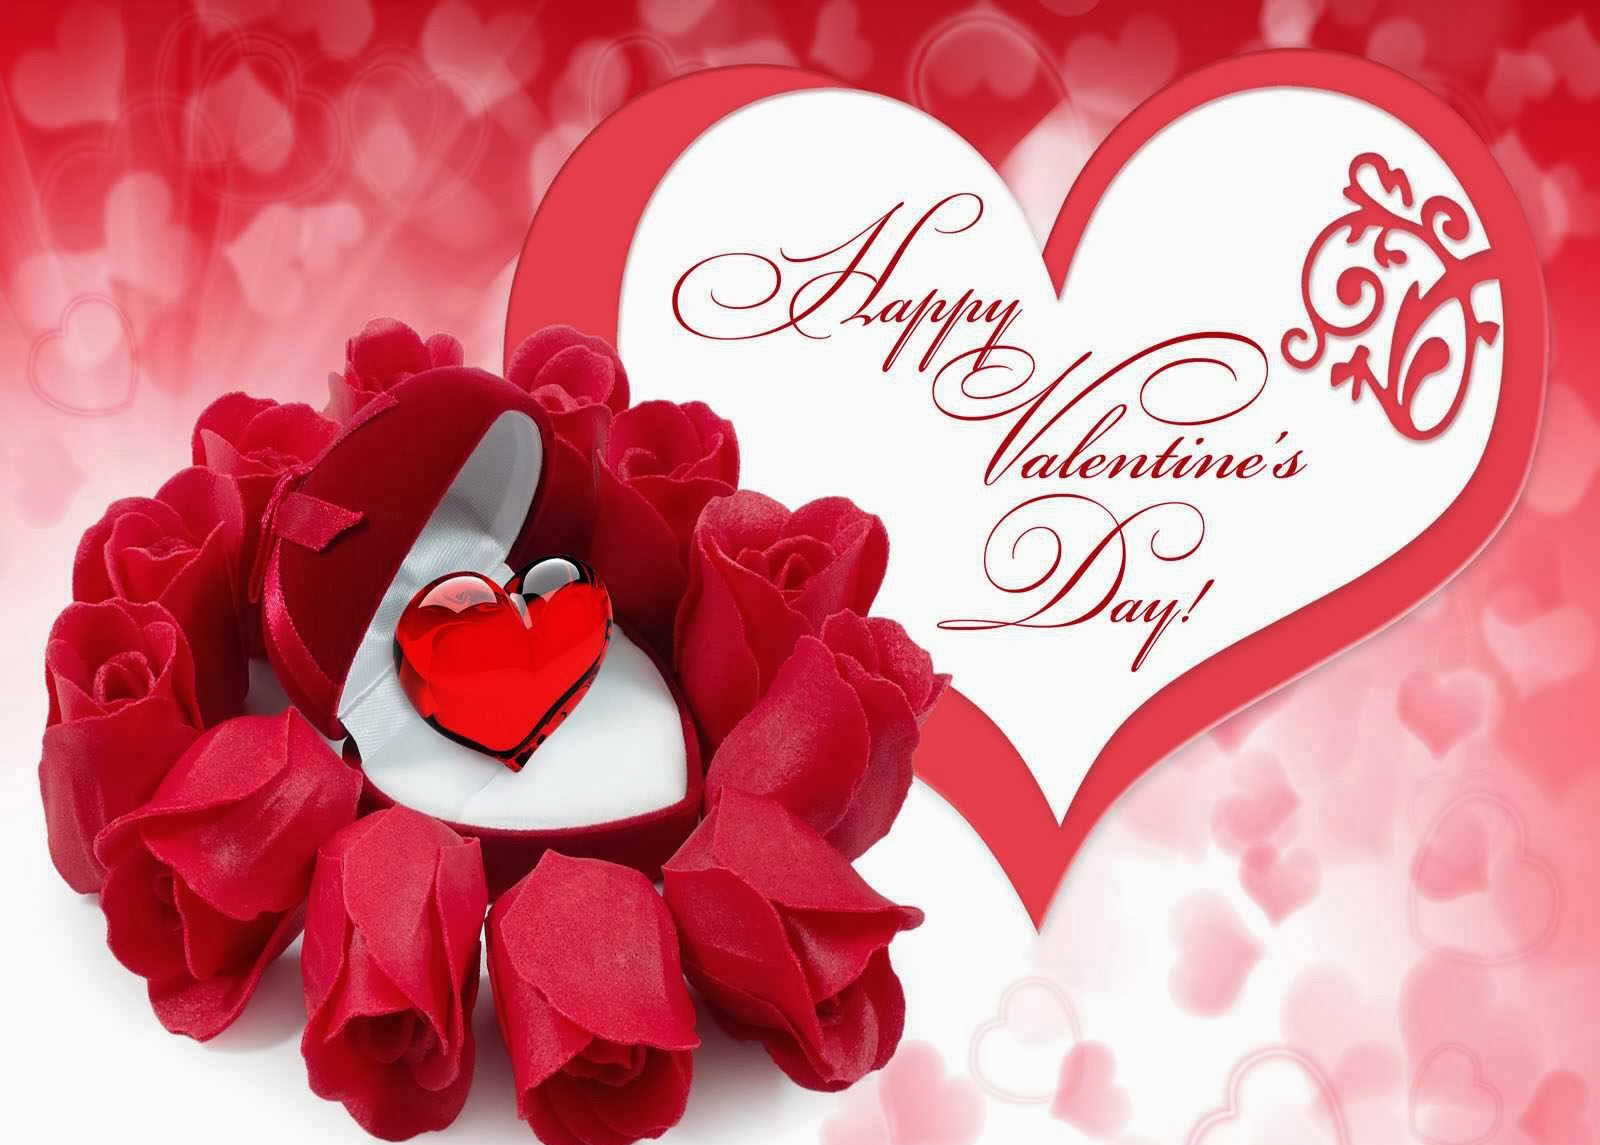 Thiệp Valentine đẹp nhất sẽ truyền tải được những tâm tư và mong muốn của bạn đến người mình yêu thương. Thiệp Valentine đẹp nhất sẽ là món quà tuyệt vời dành cho người bạn yêu, giúp tăng thêm tình cảm, sự tin tưởng và sự gắn kết. Cùng ngắm thiệp Valentine đẹp nhất tại đây.